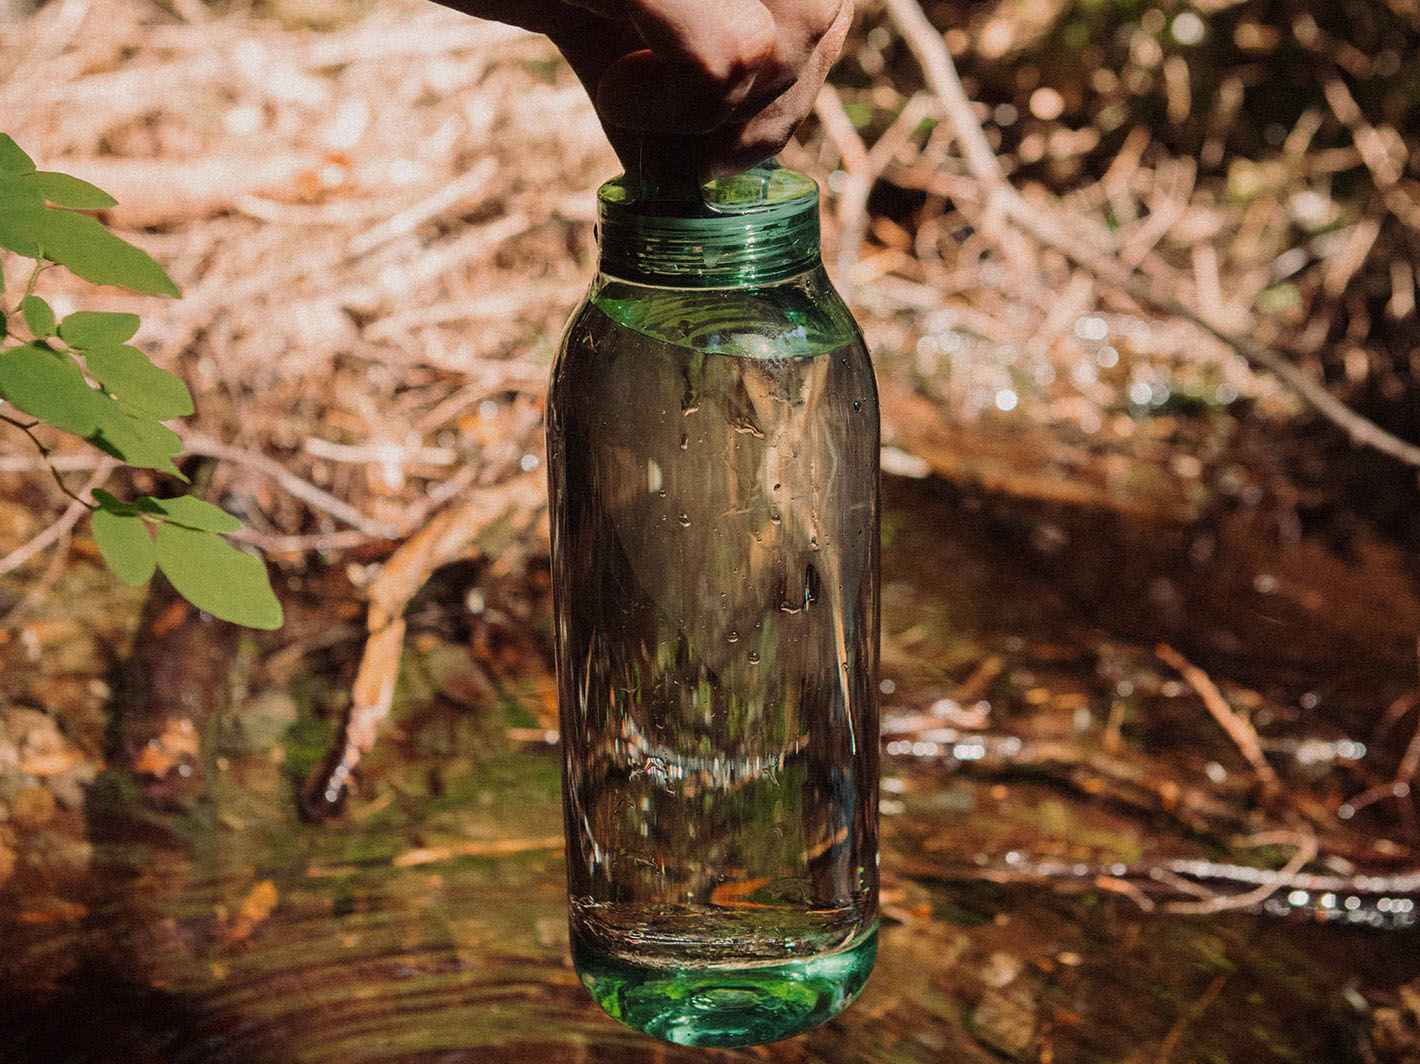 Water Bottle 500ml Green